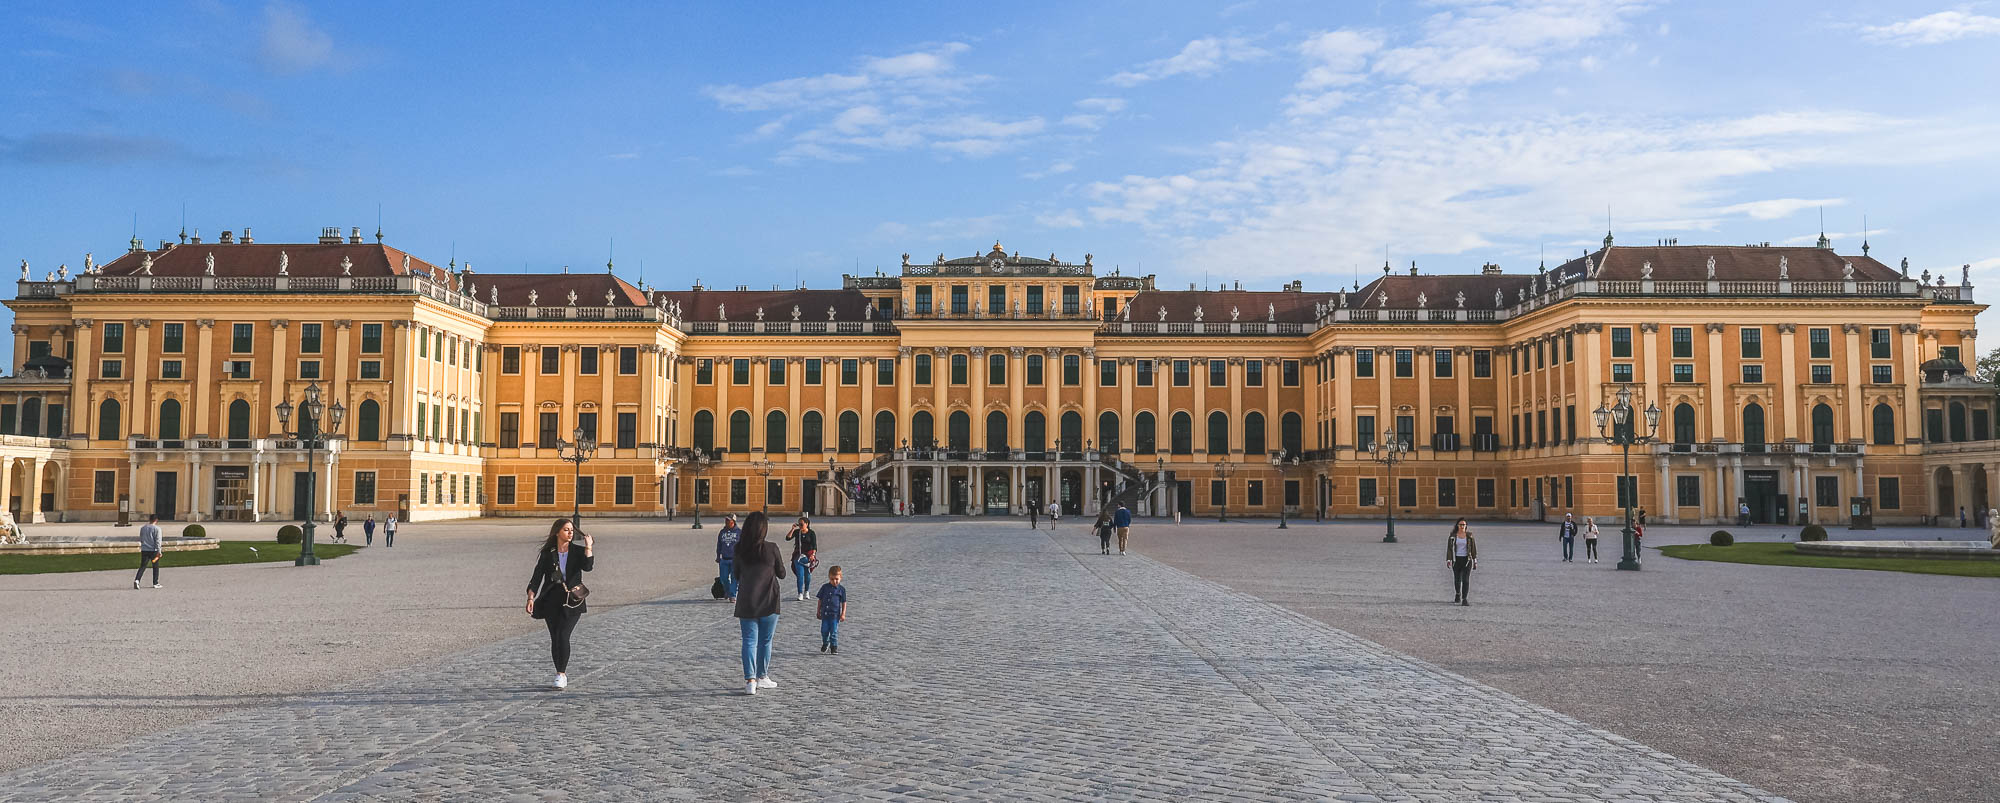 Front of Schönbrunn Palace in Hietzing, Vienna